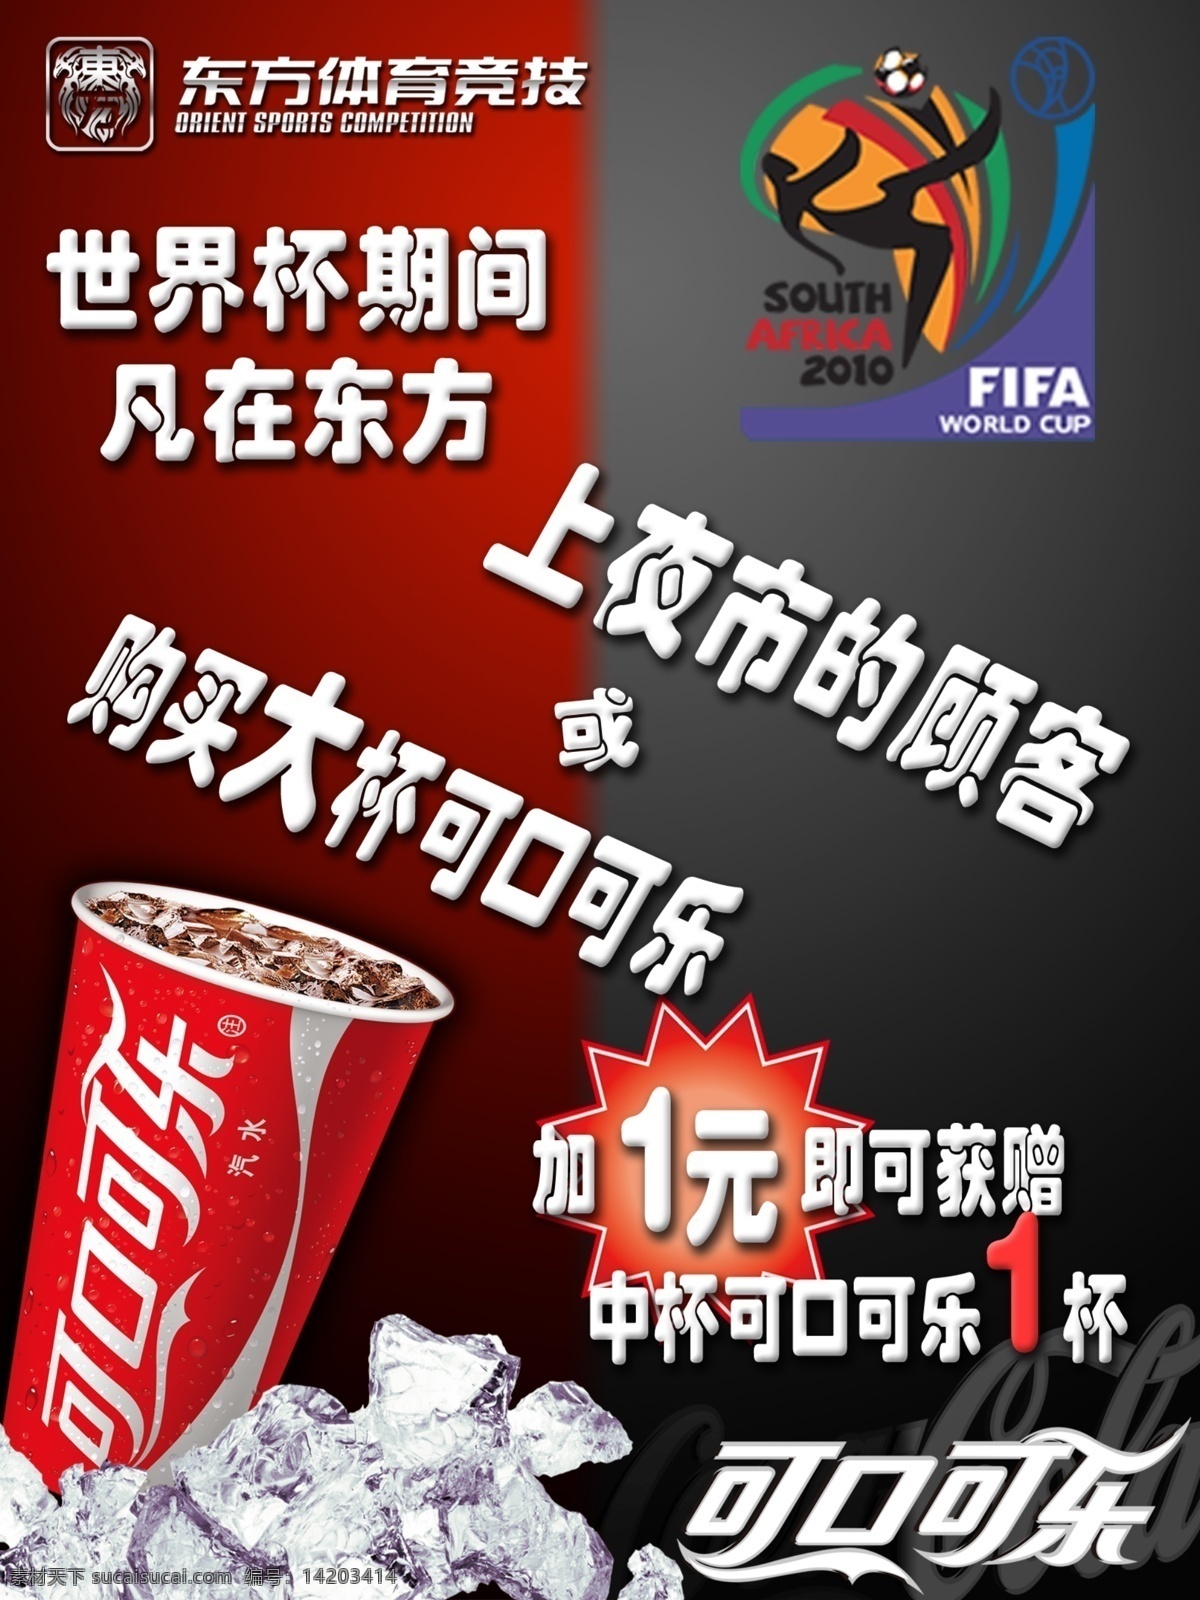 可口可乐 促销 海报 网吧夜市海报 网吧 可乐杯 冰块 回馈 世界杯 logo 广告设计模板 源文件